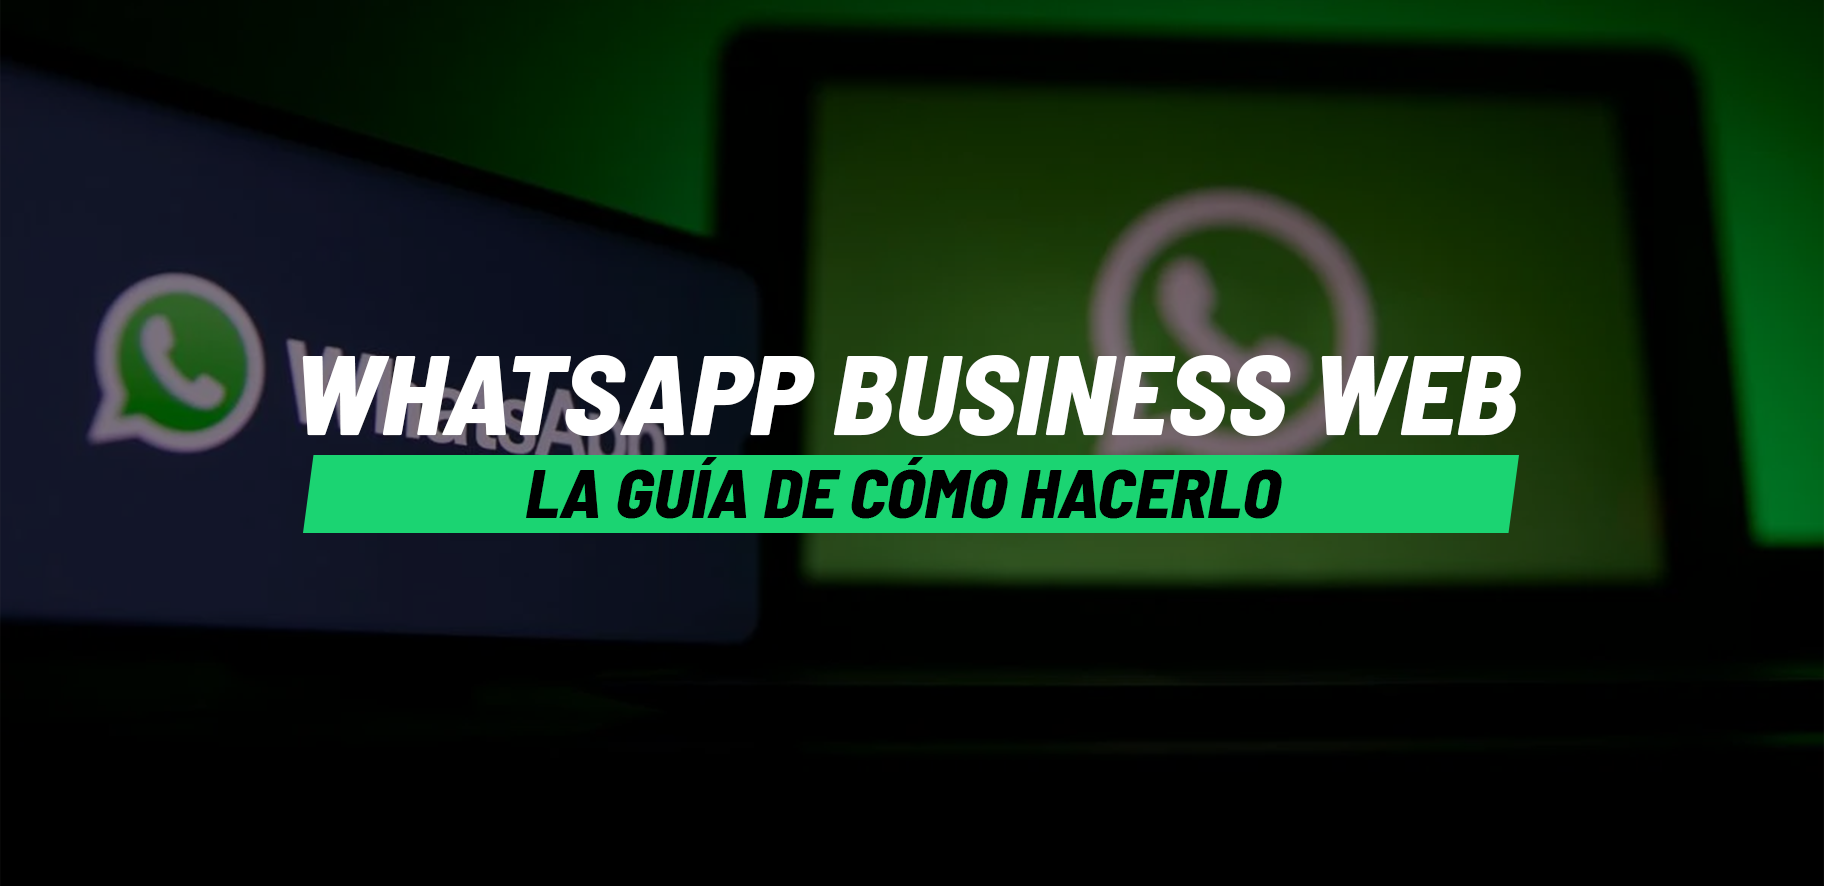 WhatsApp Business Web, la guía de cómo hacerlo